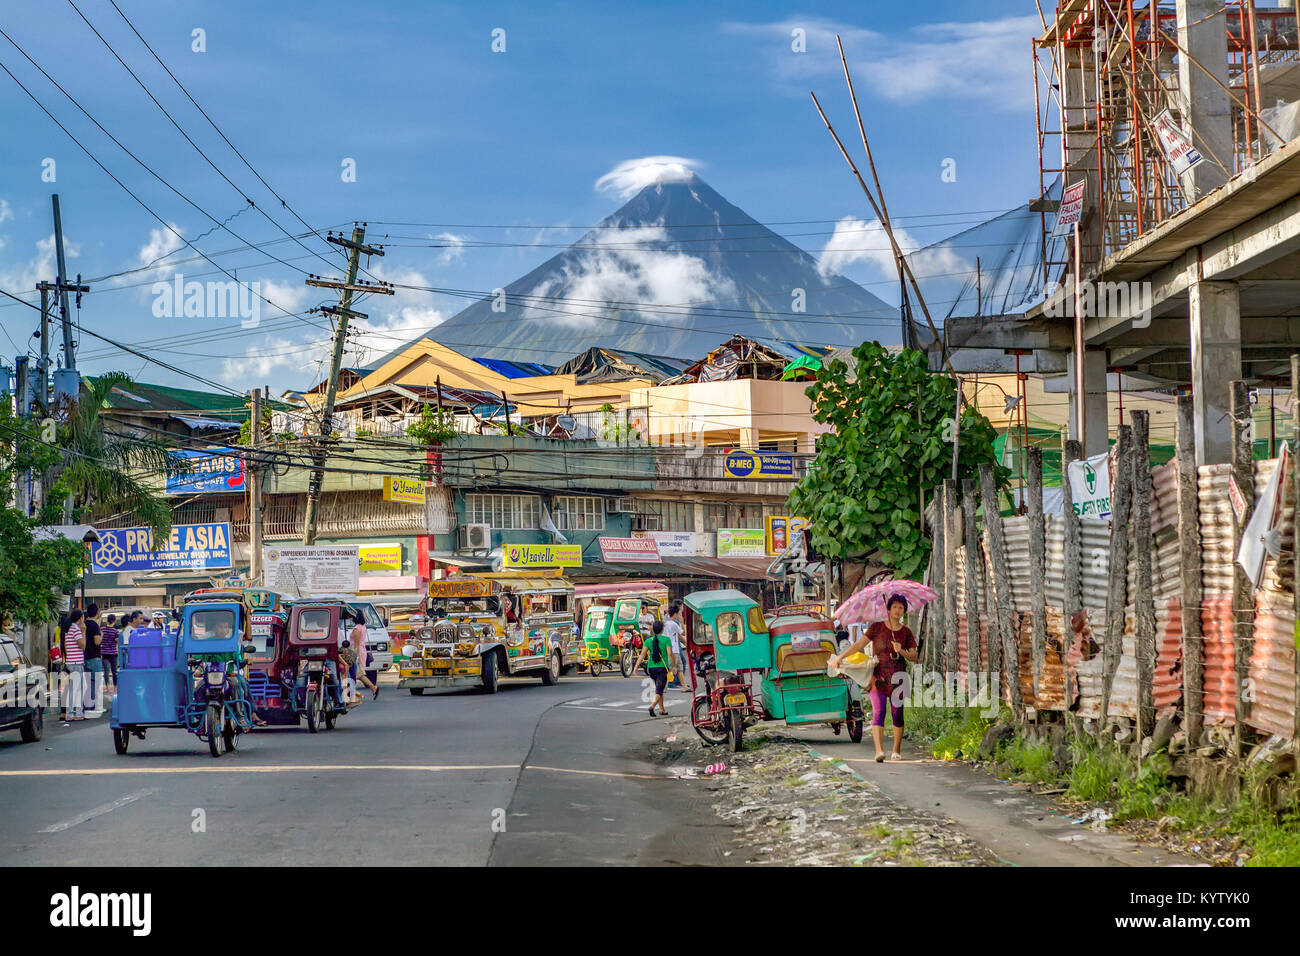 Legazpi ist eine Stadt Leben "unter dem Vulkan". Das Leben geht weiter wie gewohnt unter der ständigen Bedrohung der Eruption des Mount Mayon Vulkan sehr aktiv. Stockfoto